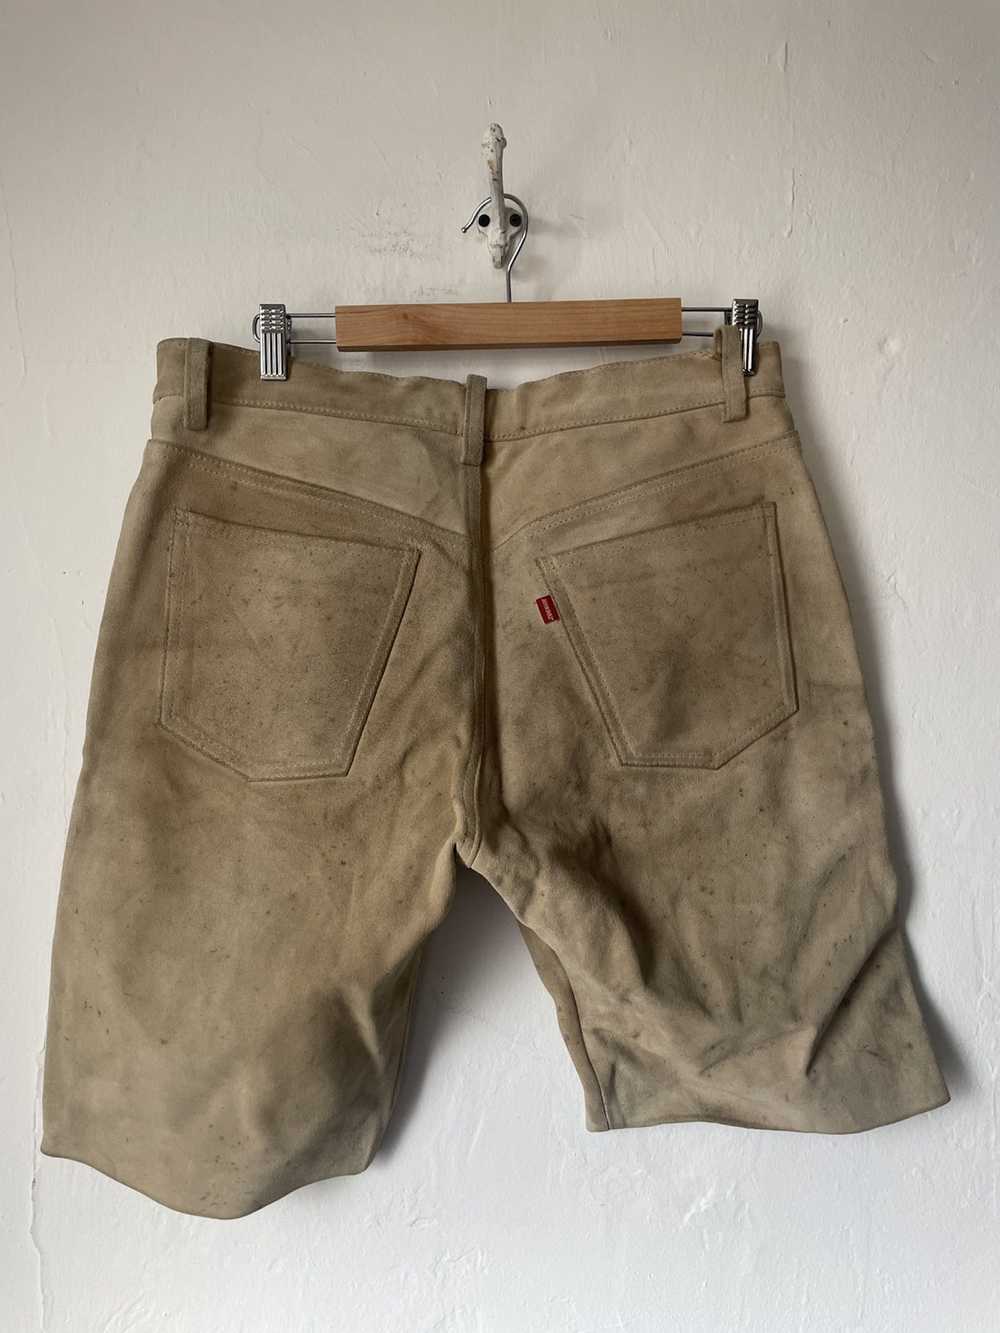 John Bull Leather John Bull shorts - image 2